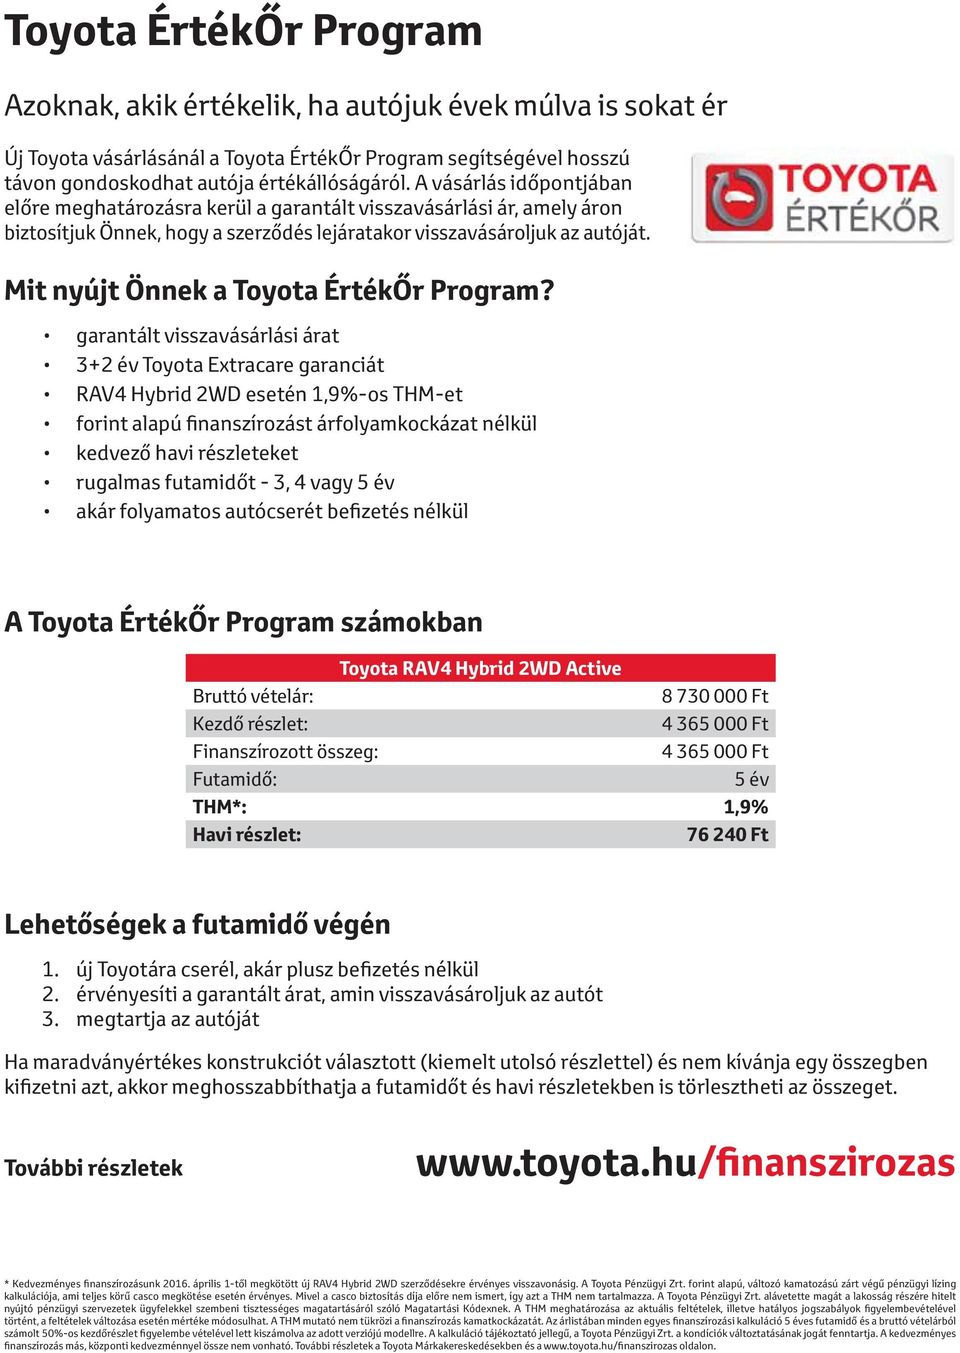 Mit nyújt Önnek a Toyota ÉrtékŐr Program?